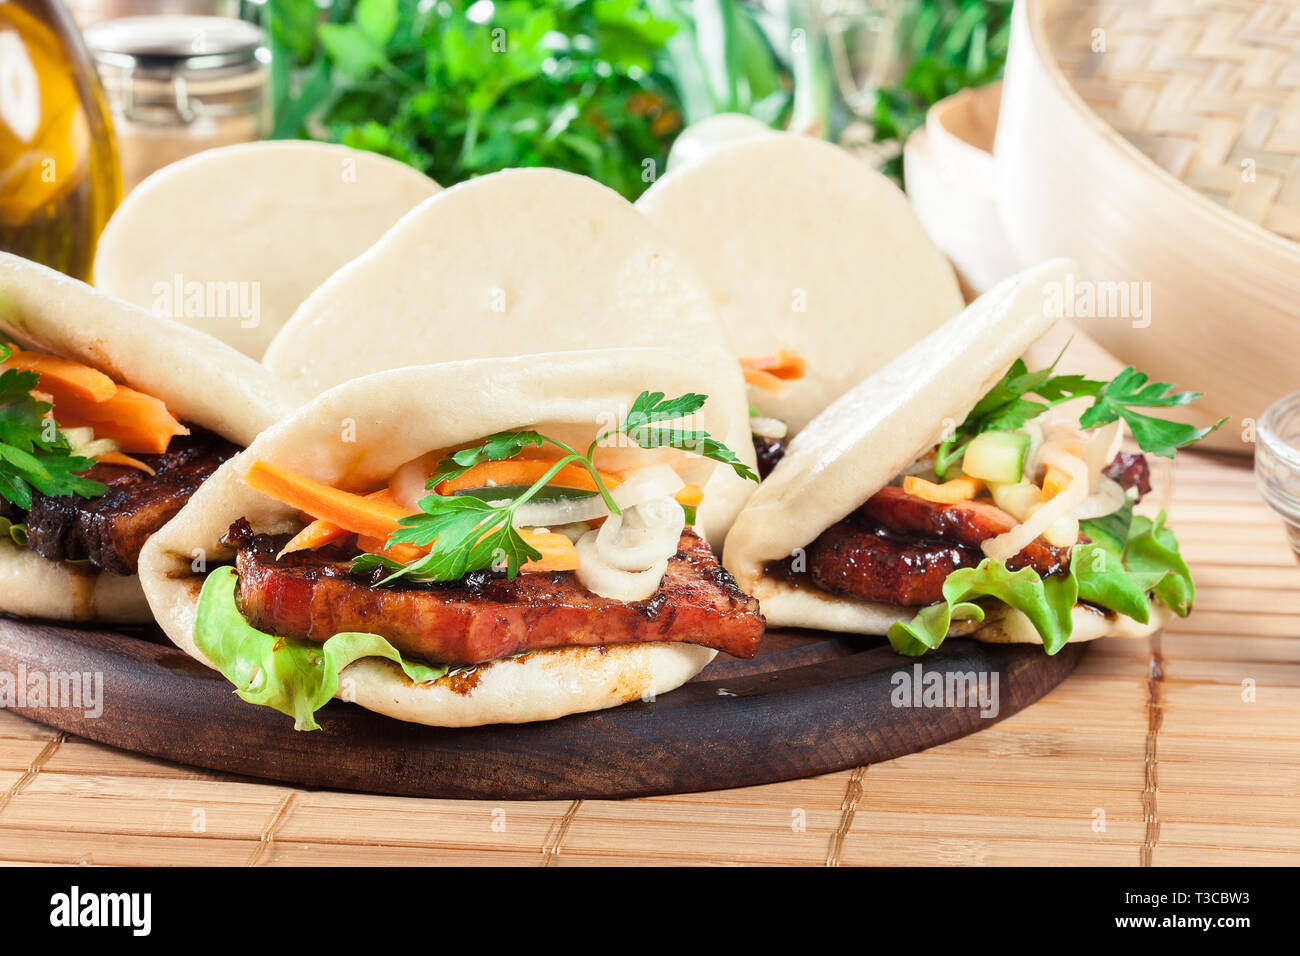 Bao gua, brioches à la vapeur avec des légumes et de porc. La cuisine asiatique Banque D'Images